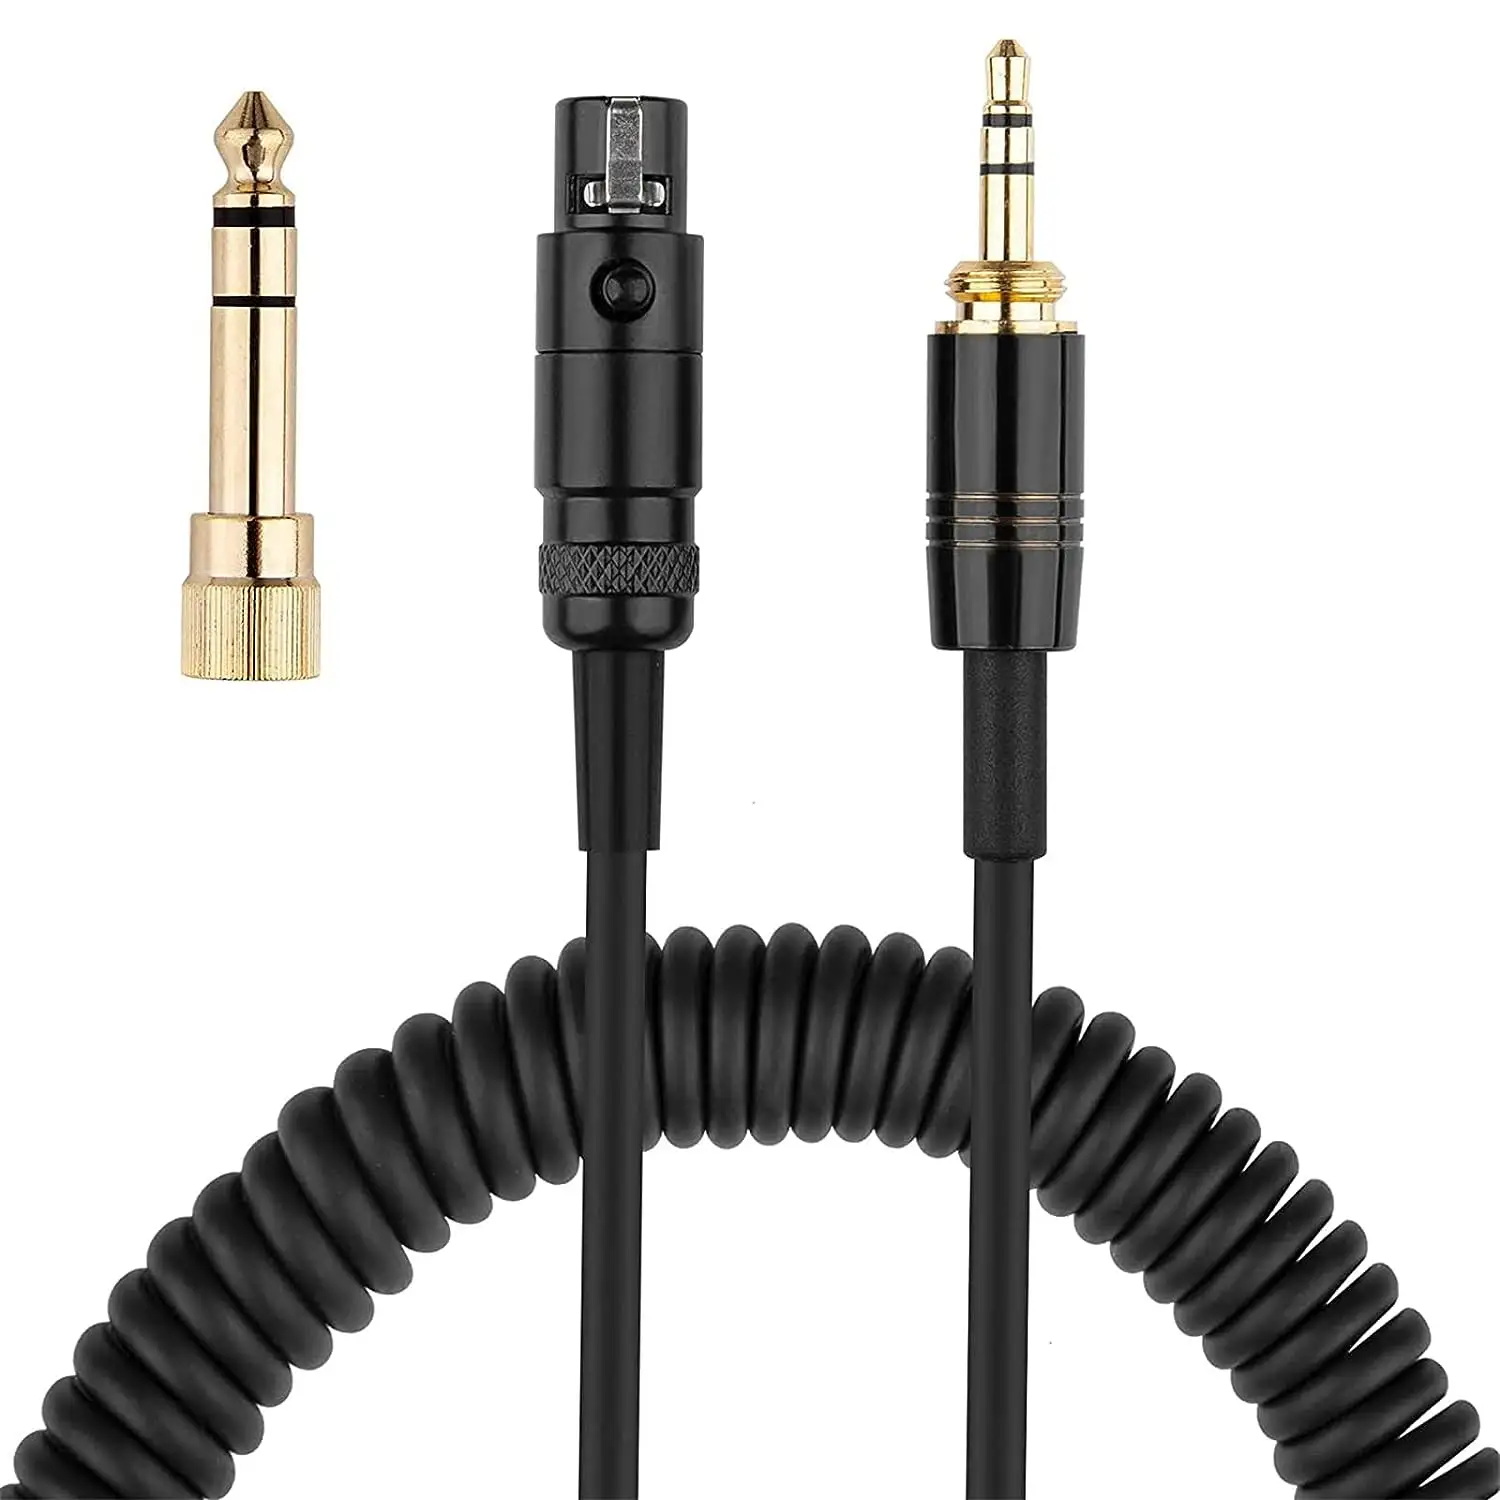 Konektor TRS lapis emas, Jack 3.5mm dan Jack Stereo 6.35mm ke 3pin, kabel Audio Female XLR Hi-Fi